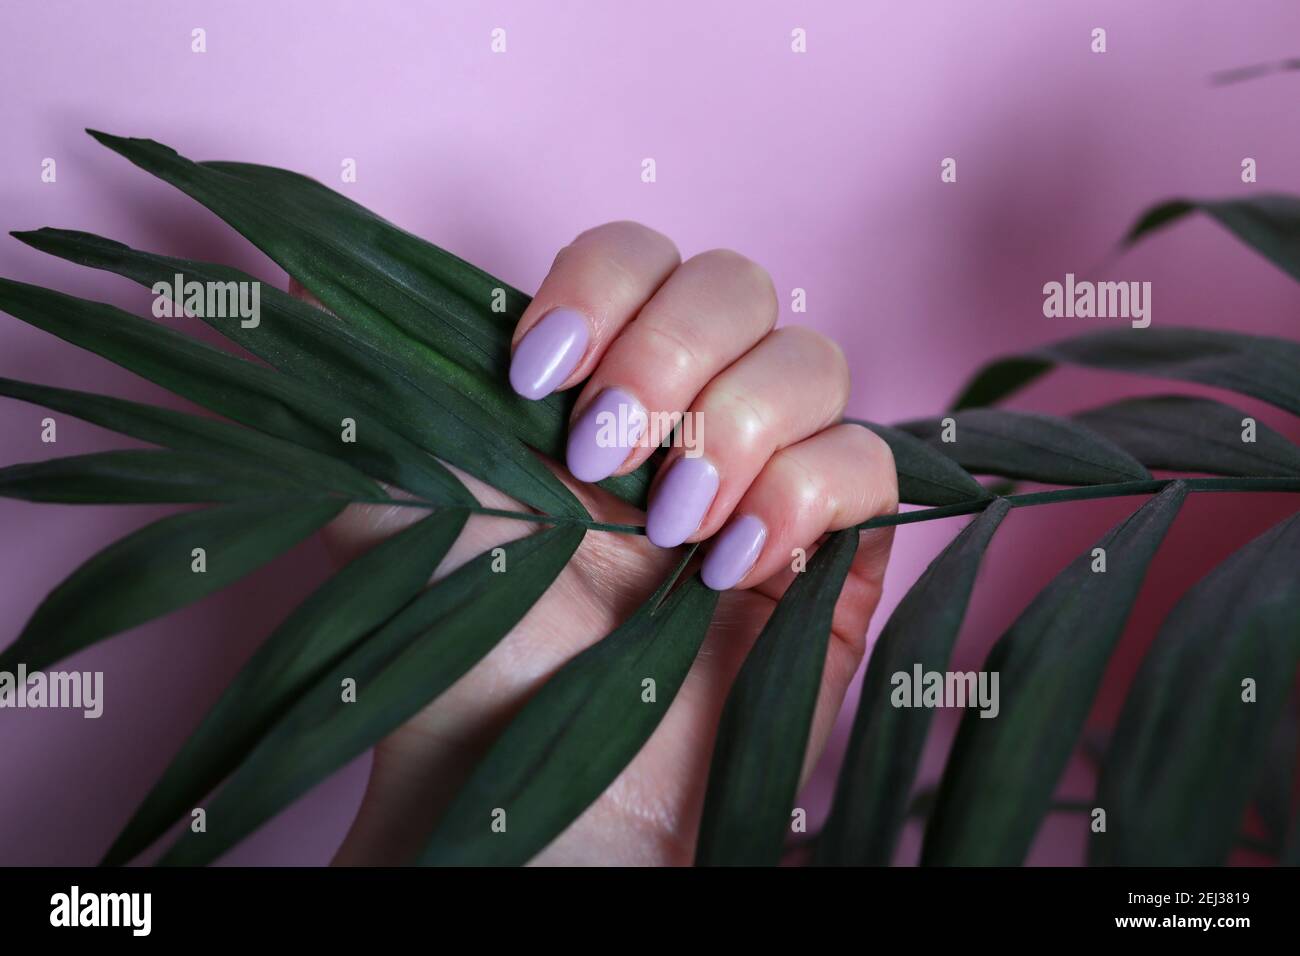 La mano femminile con unghie di colore viola tiene la foglia di palma su sfondo rosa. Concetto di manicure e bellezza Foto Stock